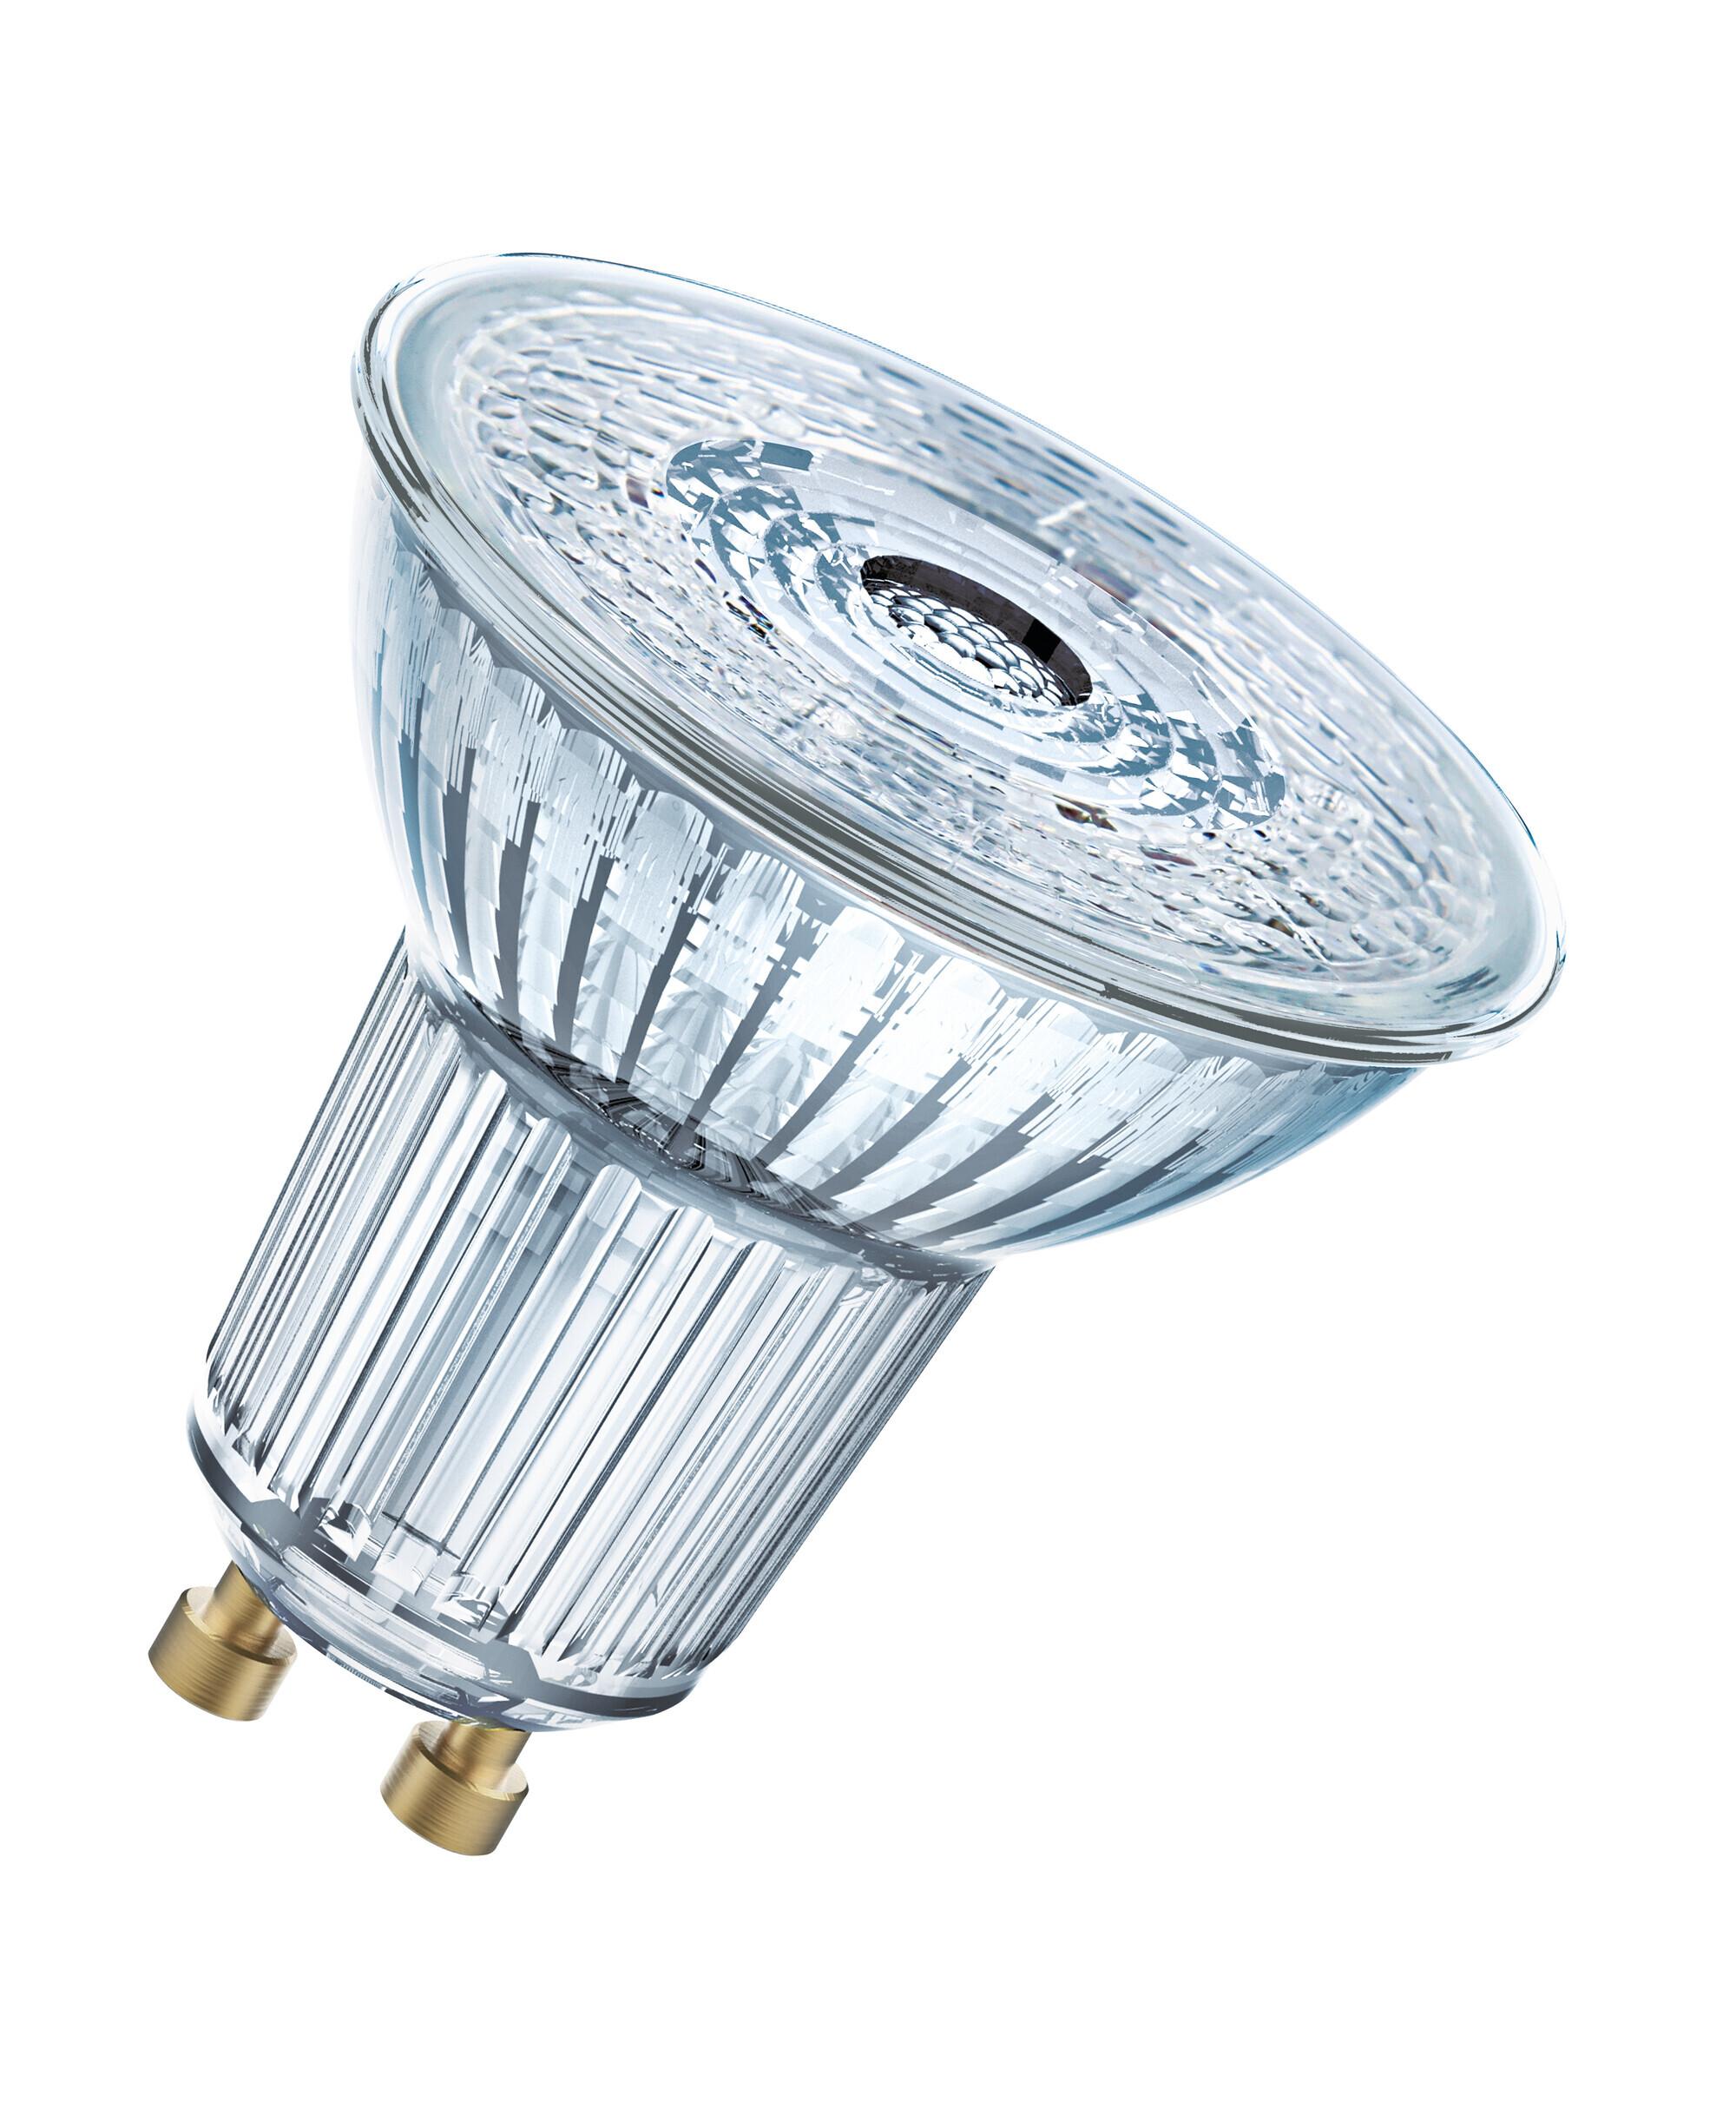 OSRAM Lamps OSRAM Superstar reflectorlamp, GU10-basis helder glas ,Warm wit (2700K), 350 Lumen, substituut voor 50W-verlichtingsmiddel dimbaar, 1-Pak